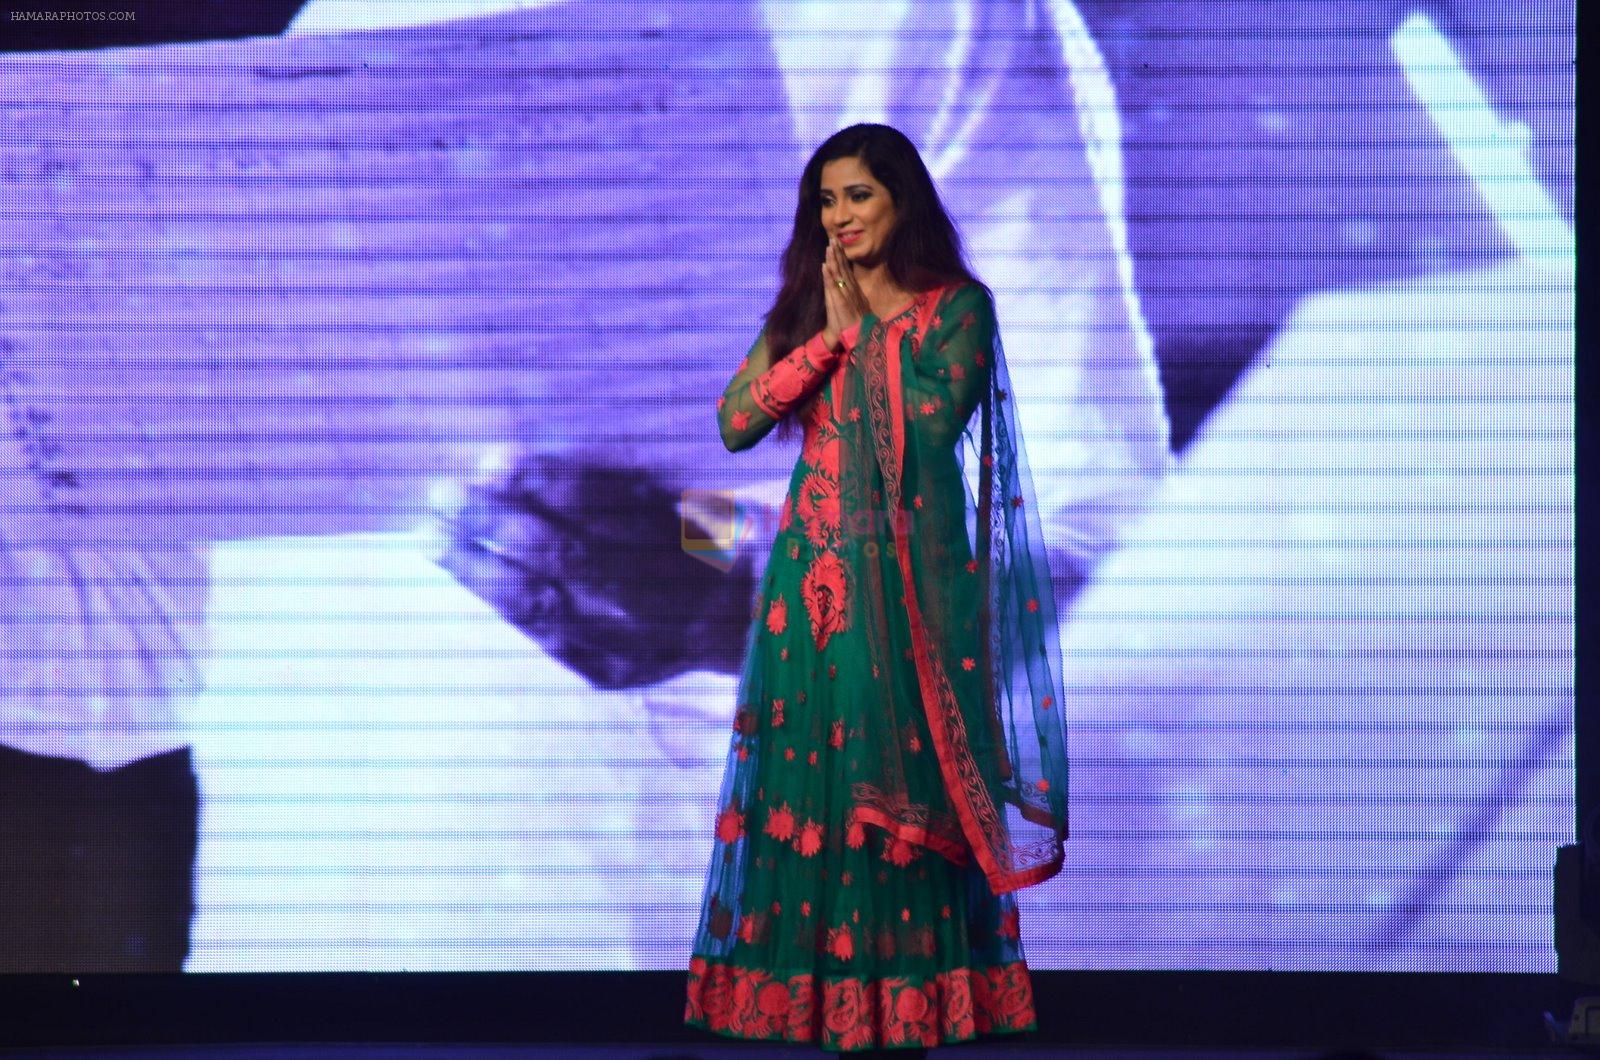 Shreya Ghoshal at Shamitabh music launch in Taj Land's End, Mumbai on 20th Jan 2015